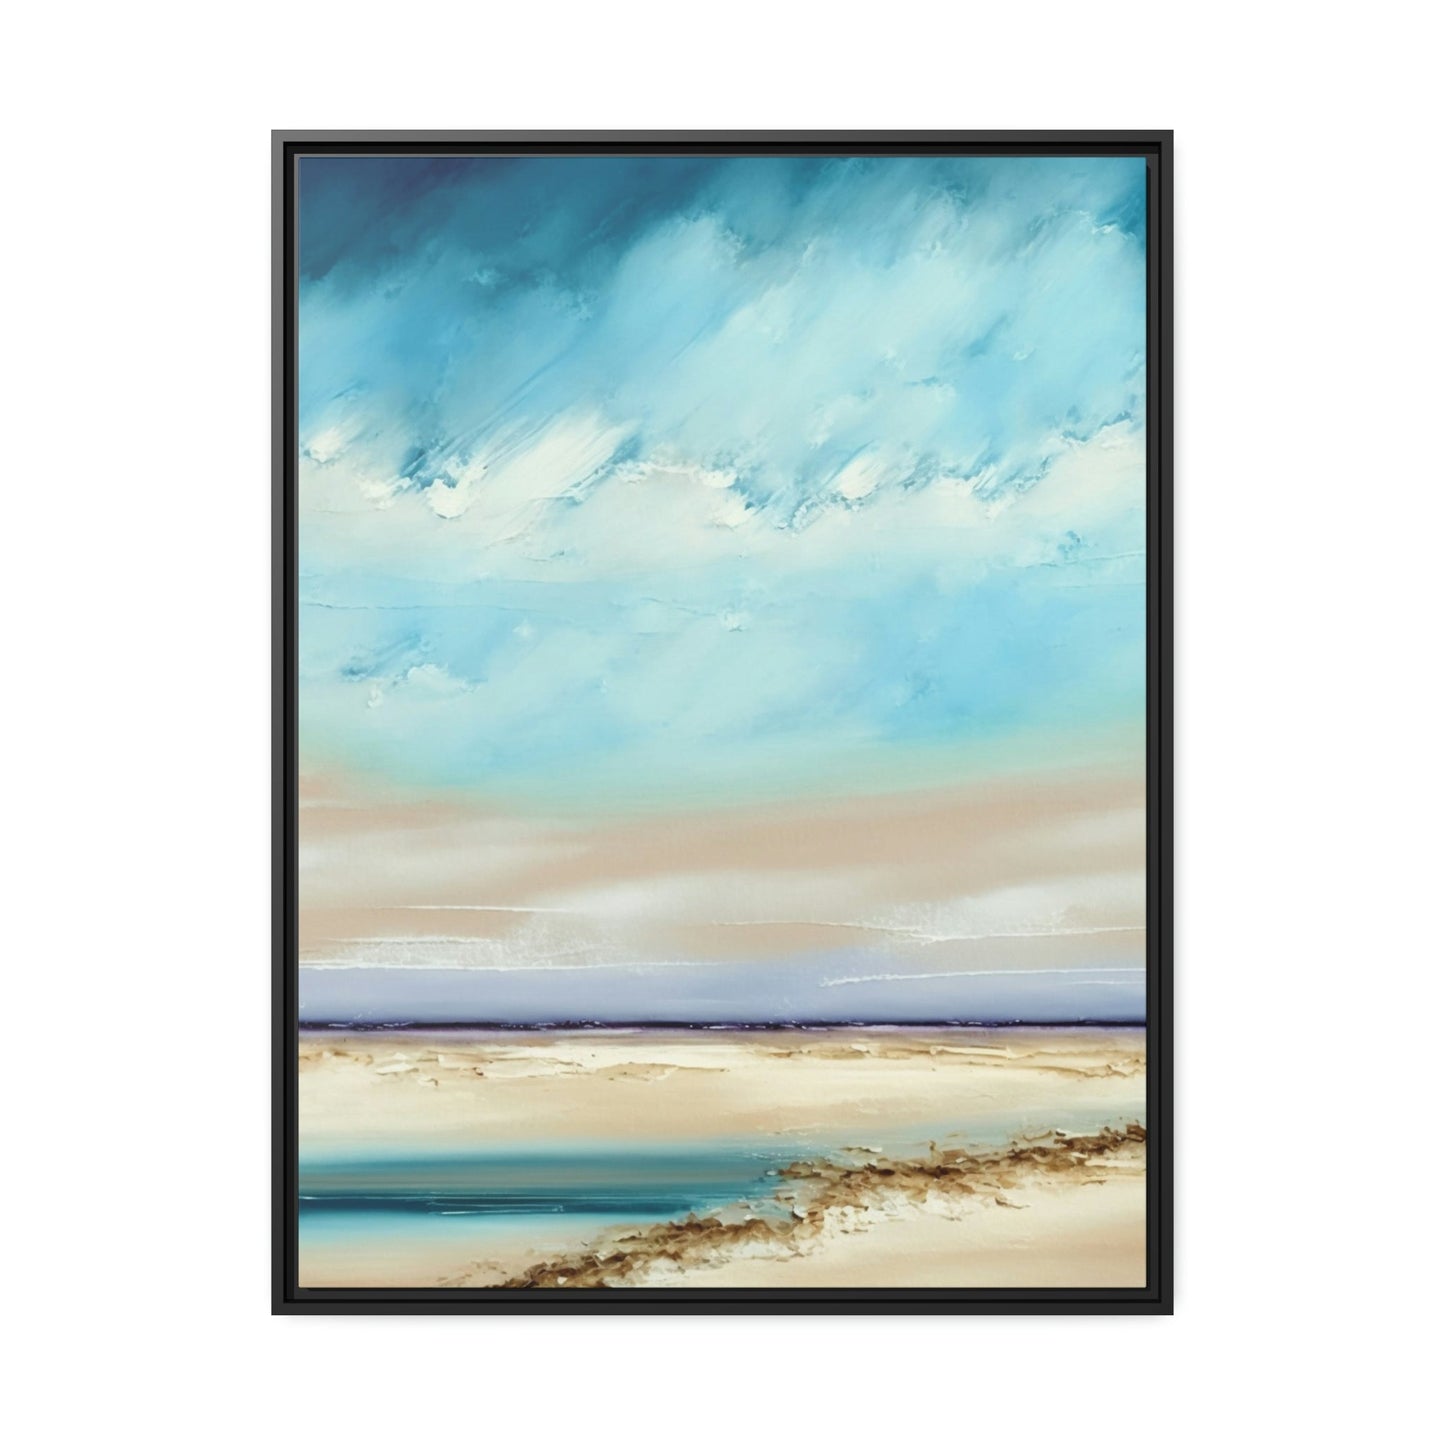 Natural Canvas Print & Poster of Abstract Seascapes: Coastal Wall Art